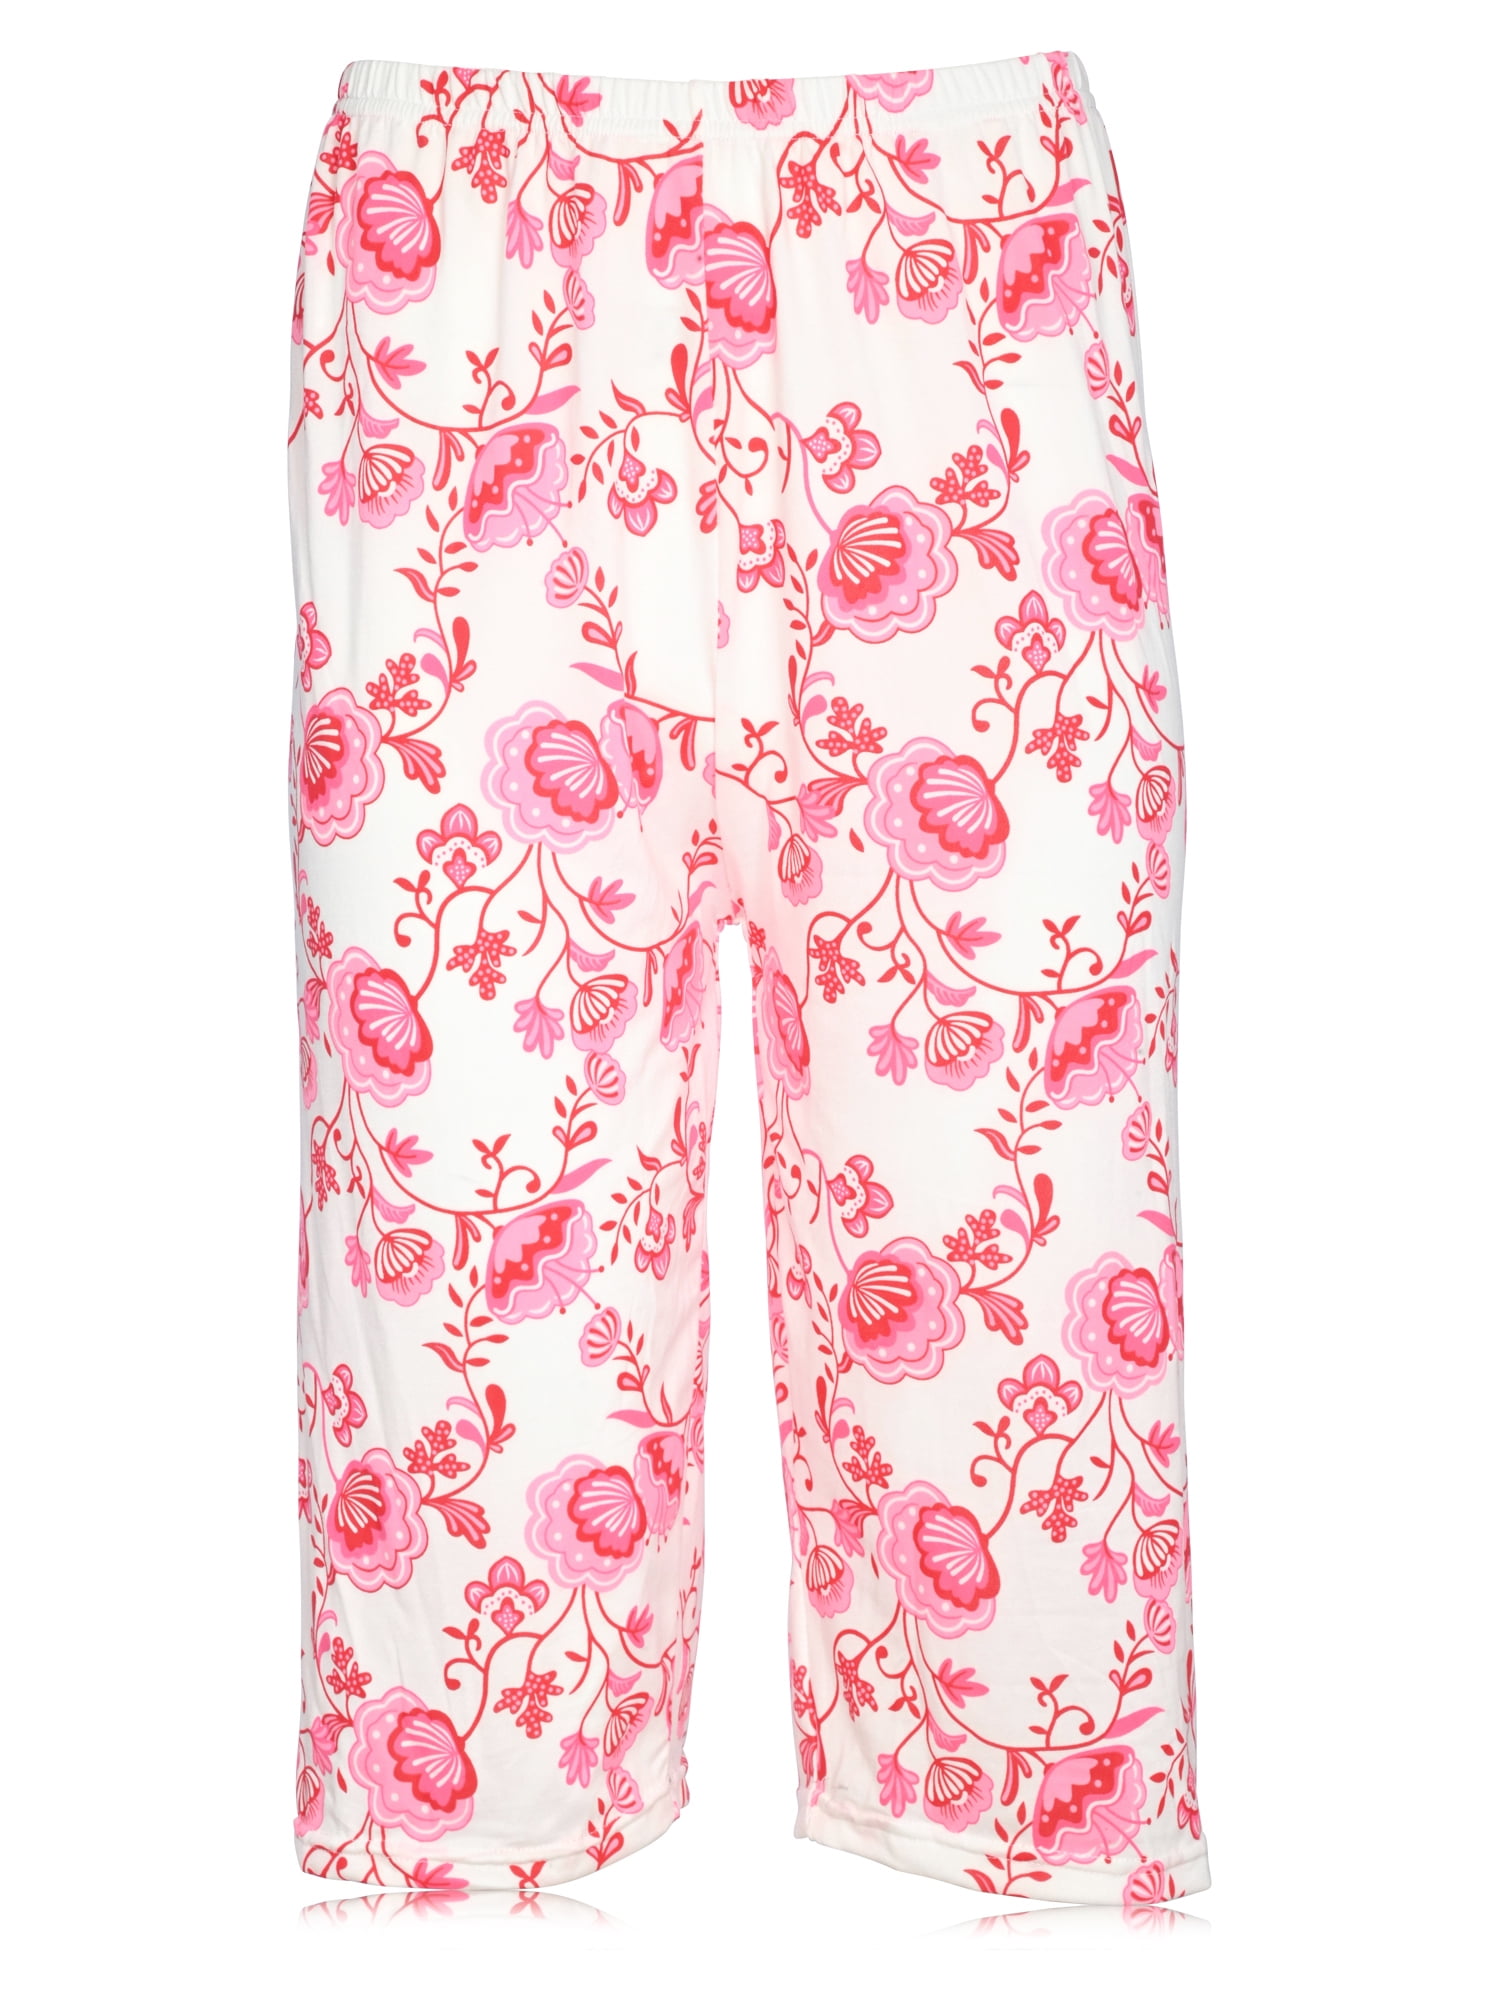 Women's Pajamas - Sears